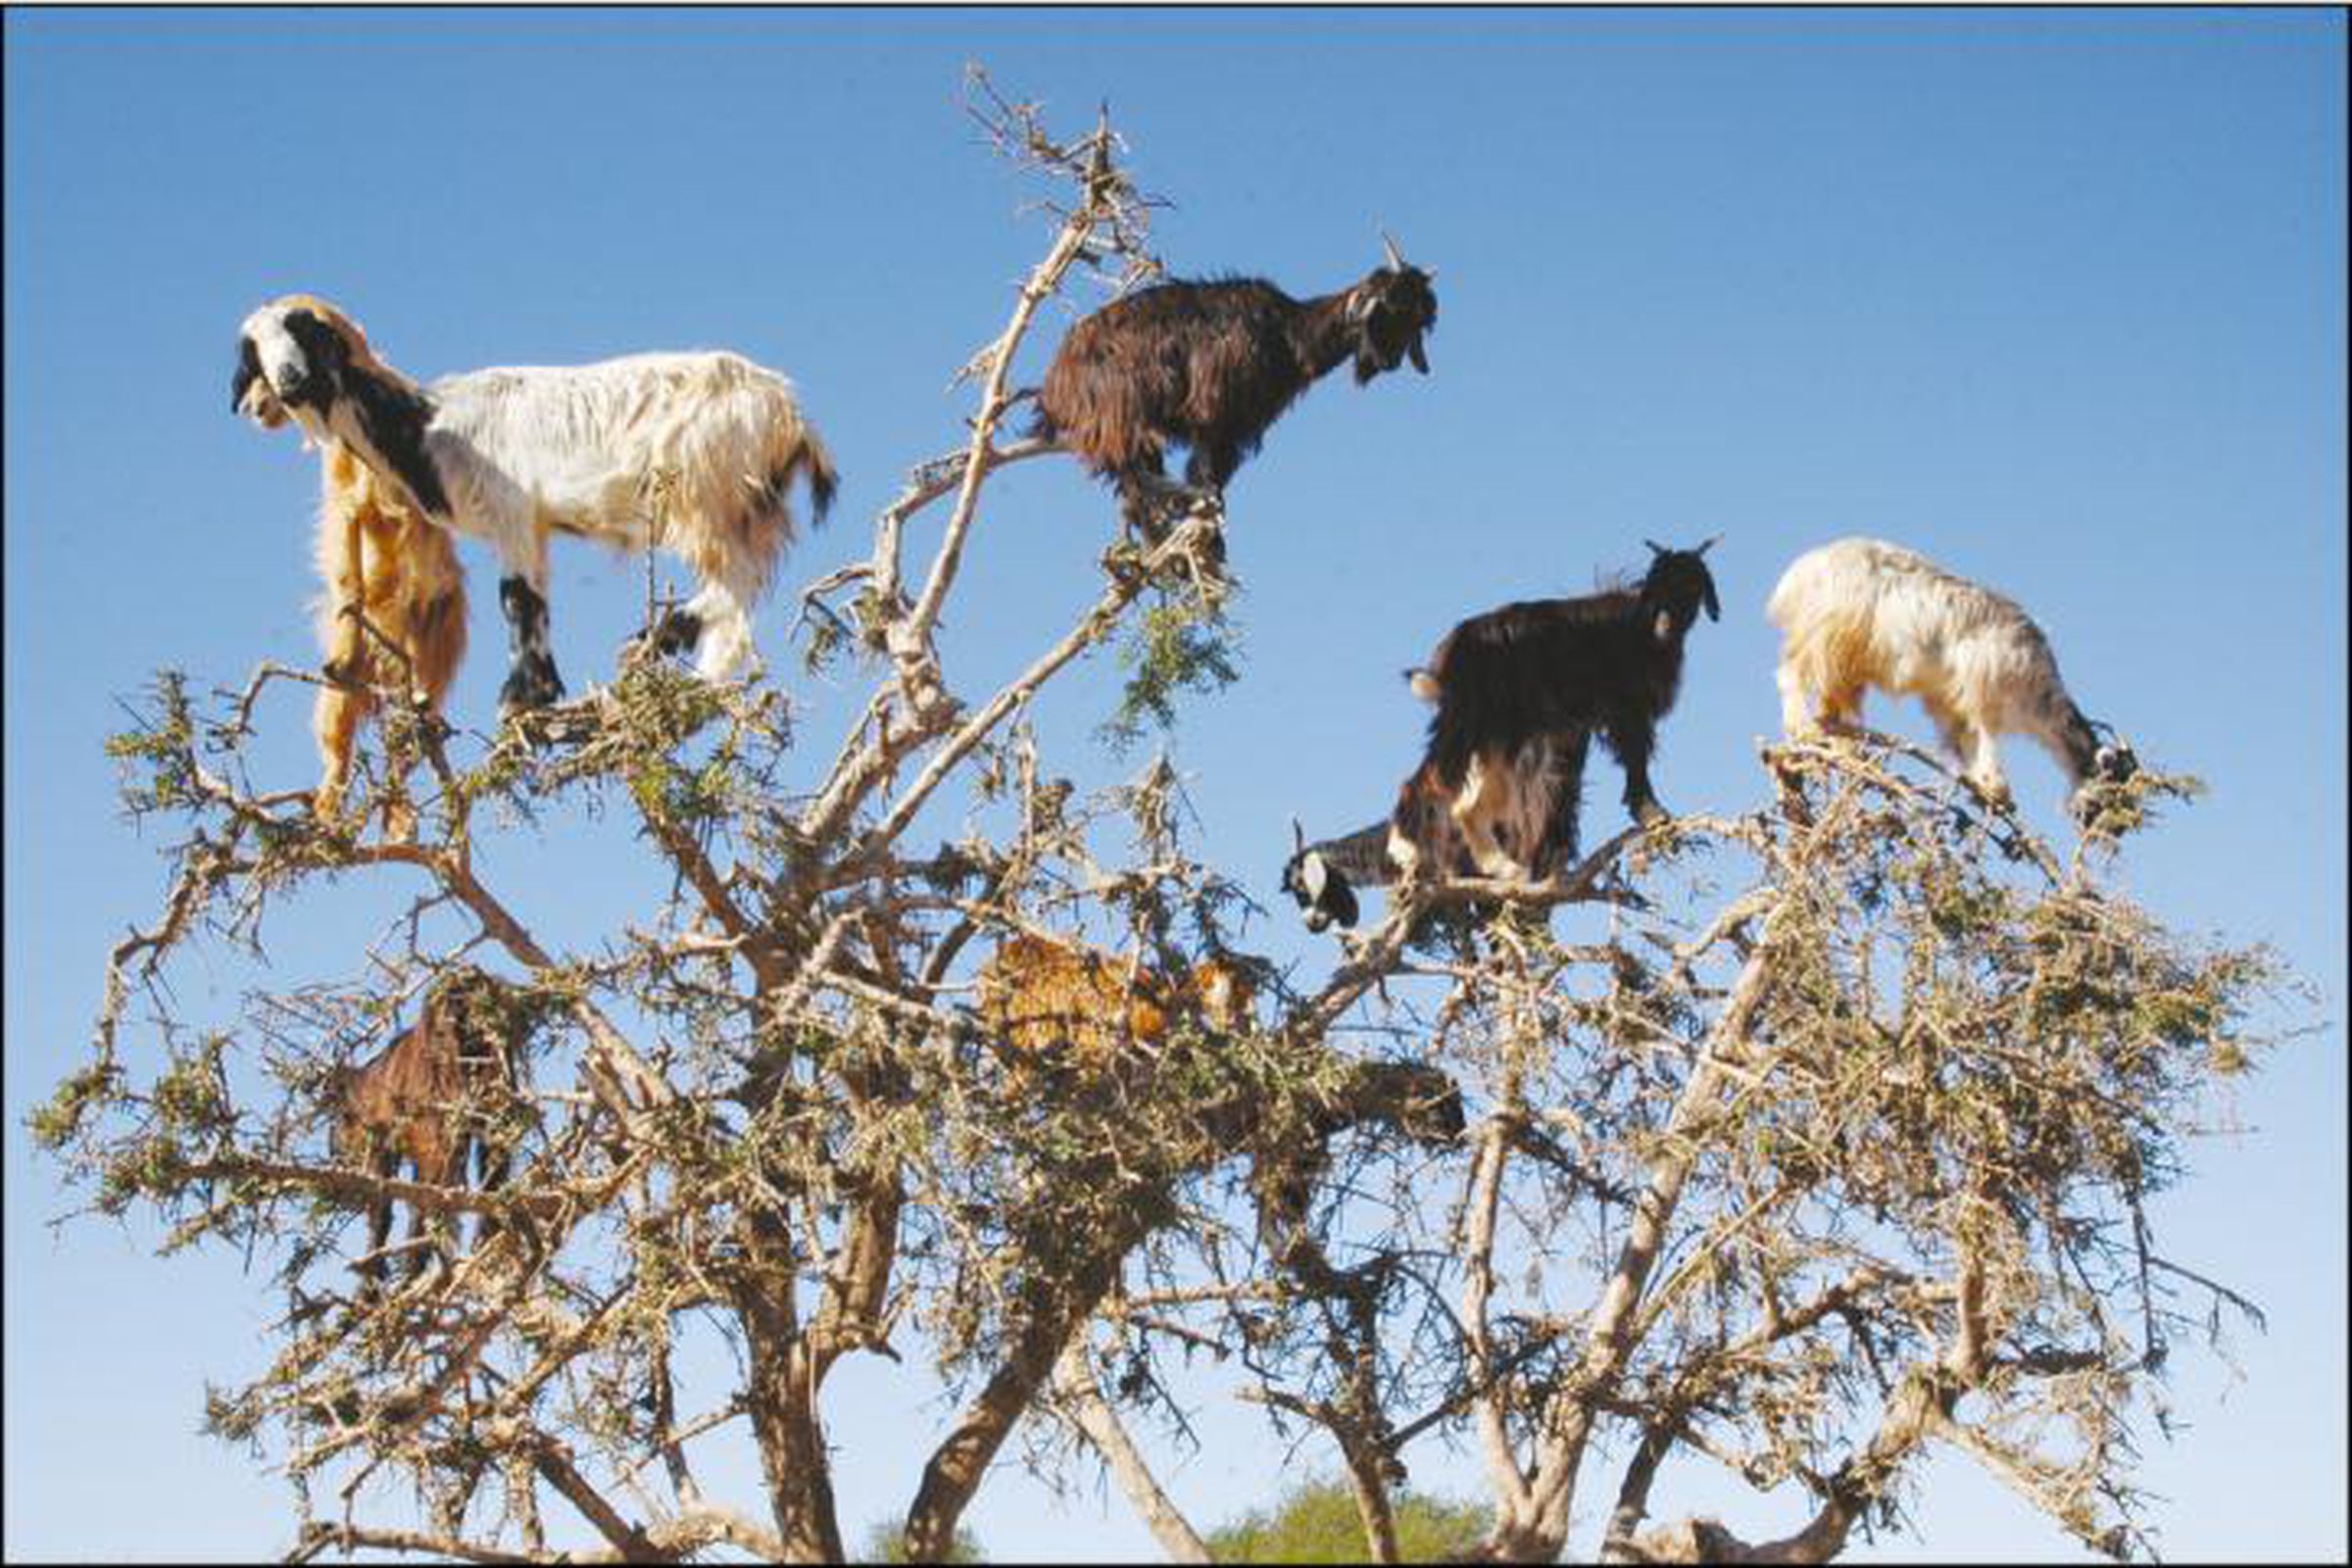 Goats graze on an argan tree in southwestern Morocco.